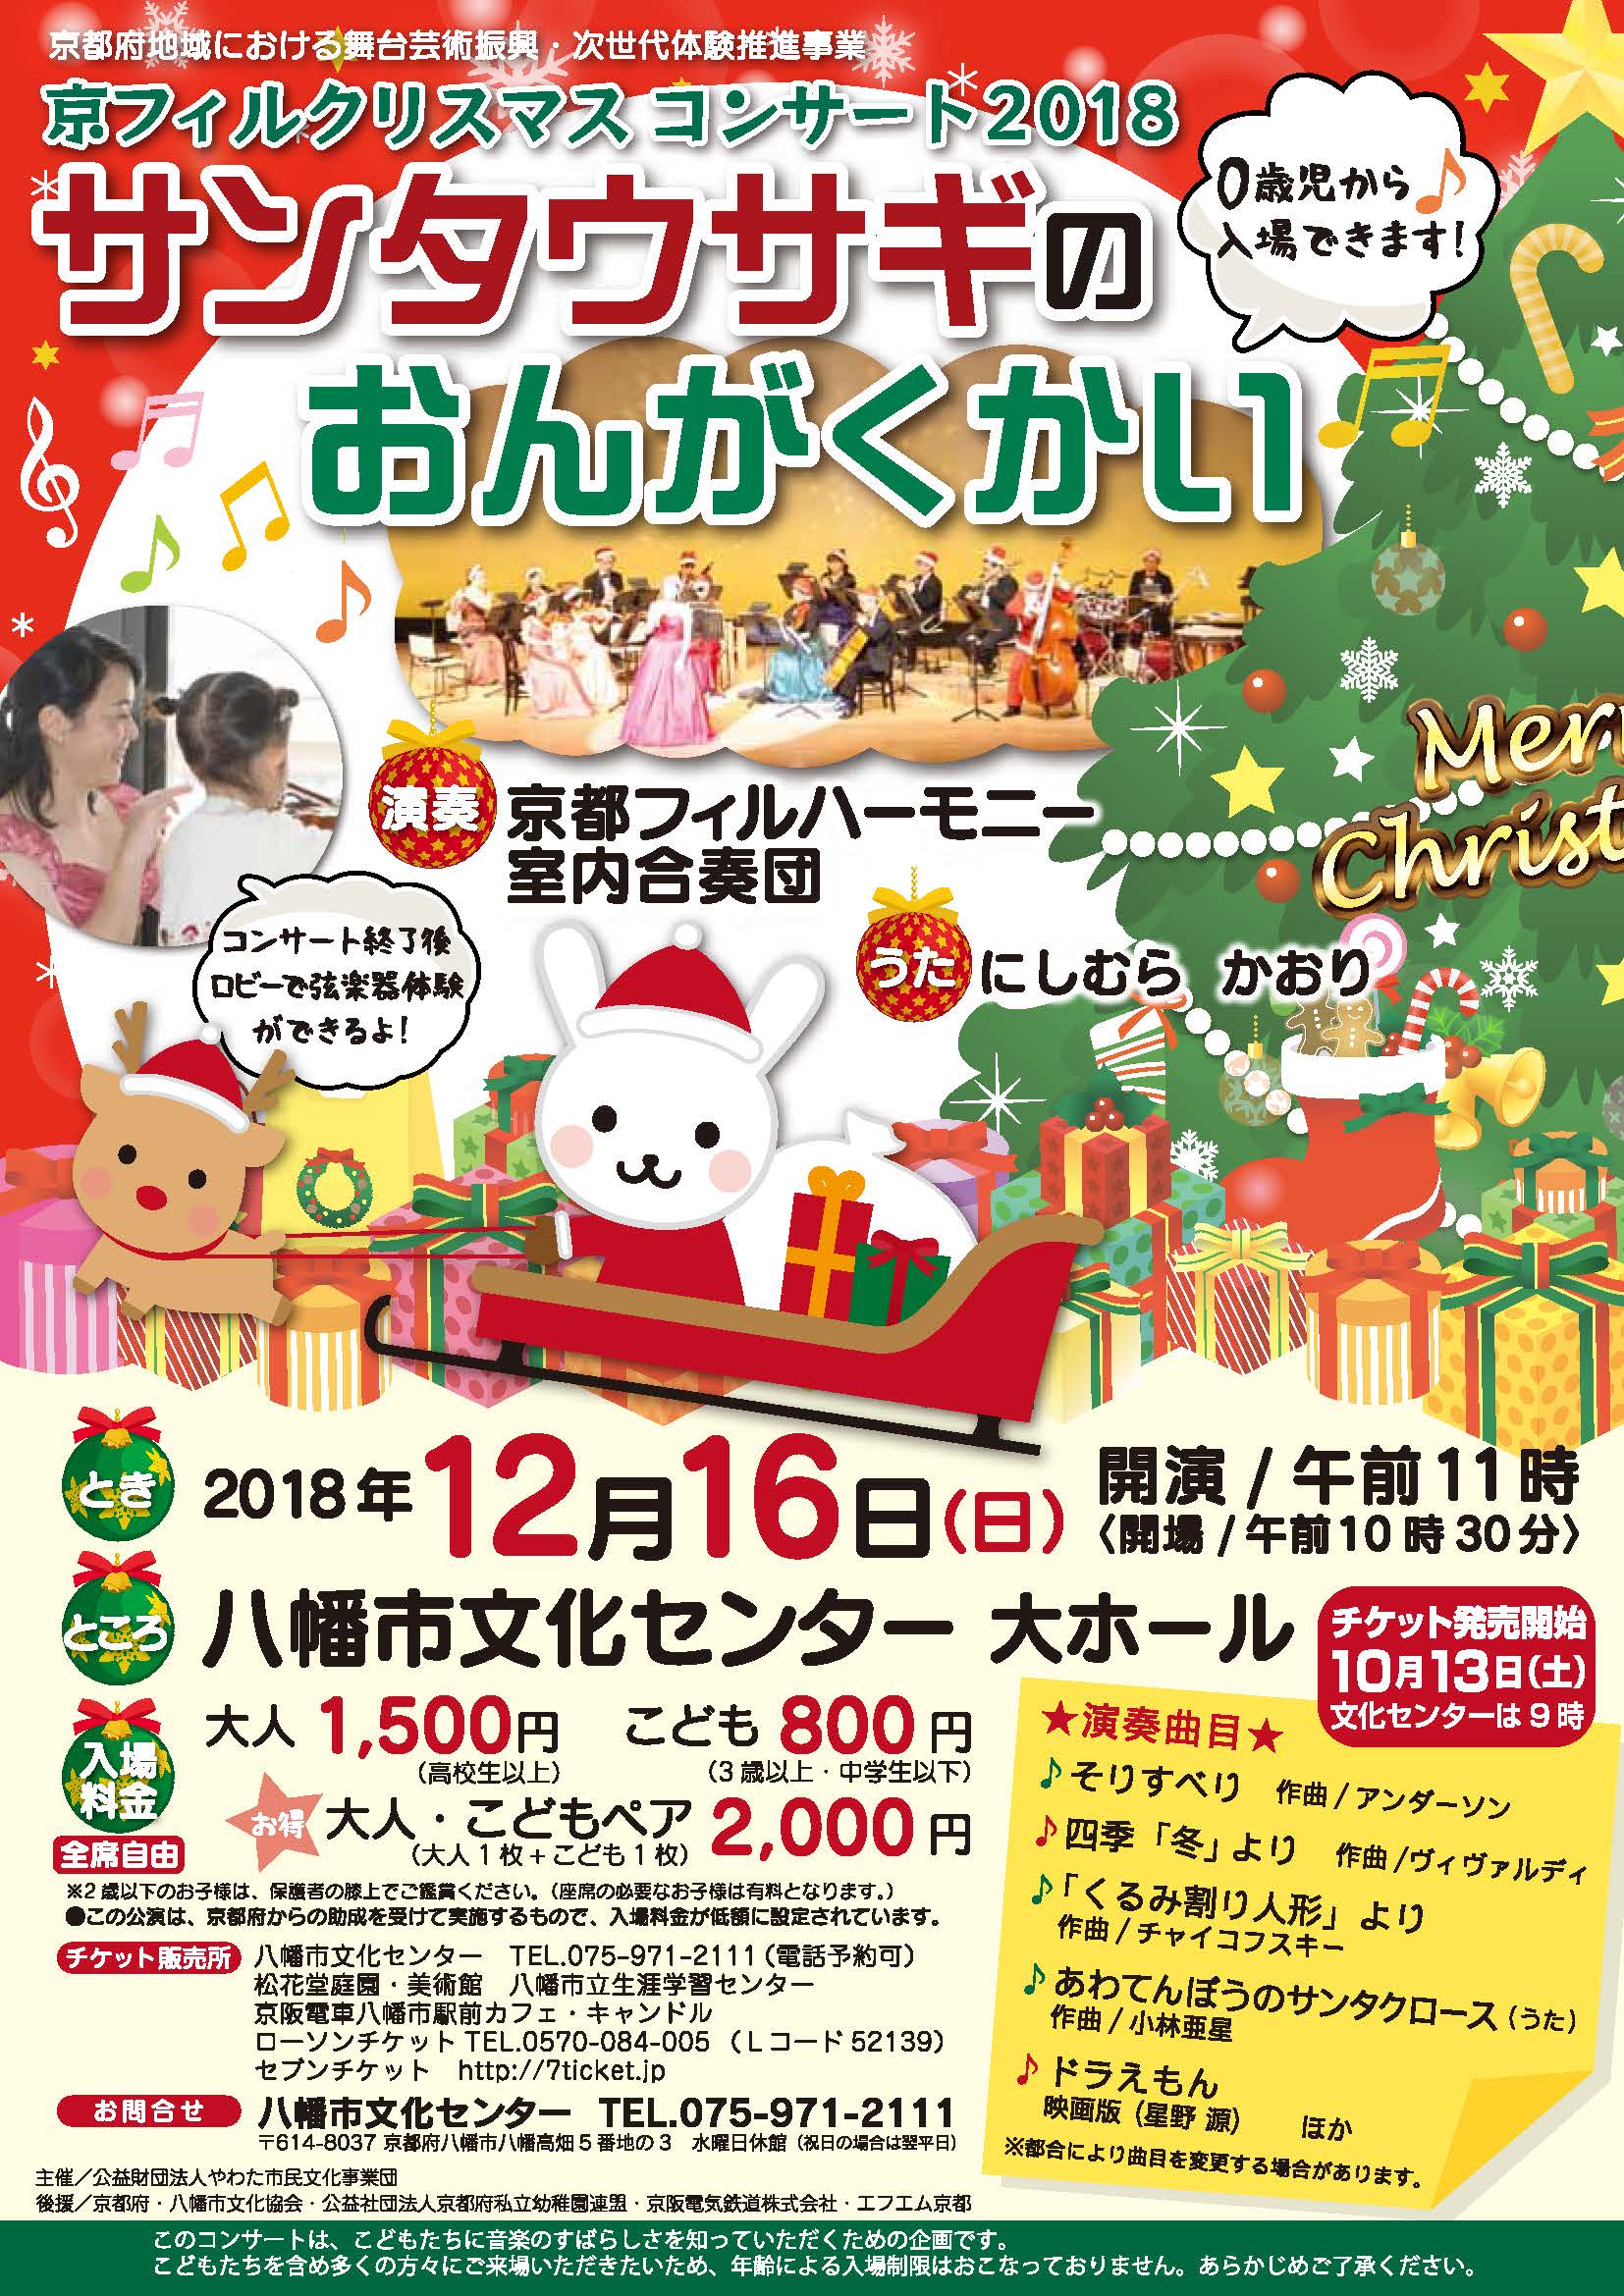 「【八幡市文化センター】京フィルクリスマスコンサート2018　サンタウサギの音楽会～おやこで楽しい思い出を～」のチラシ